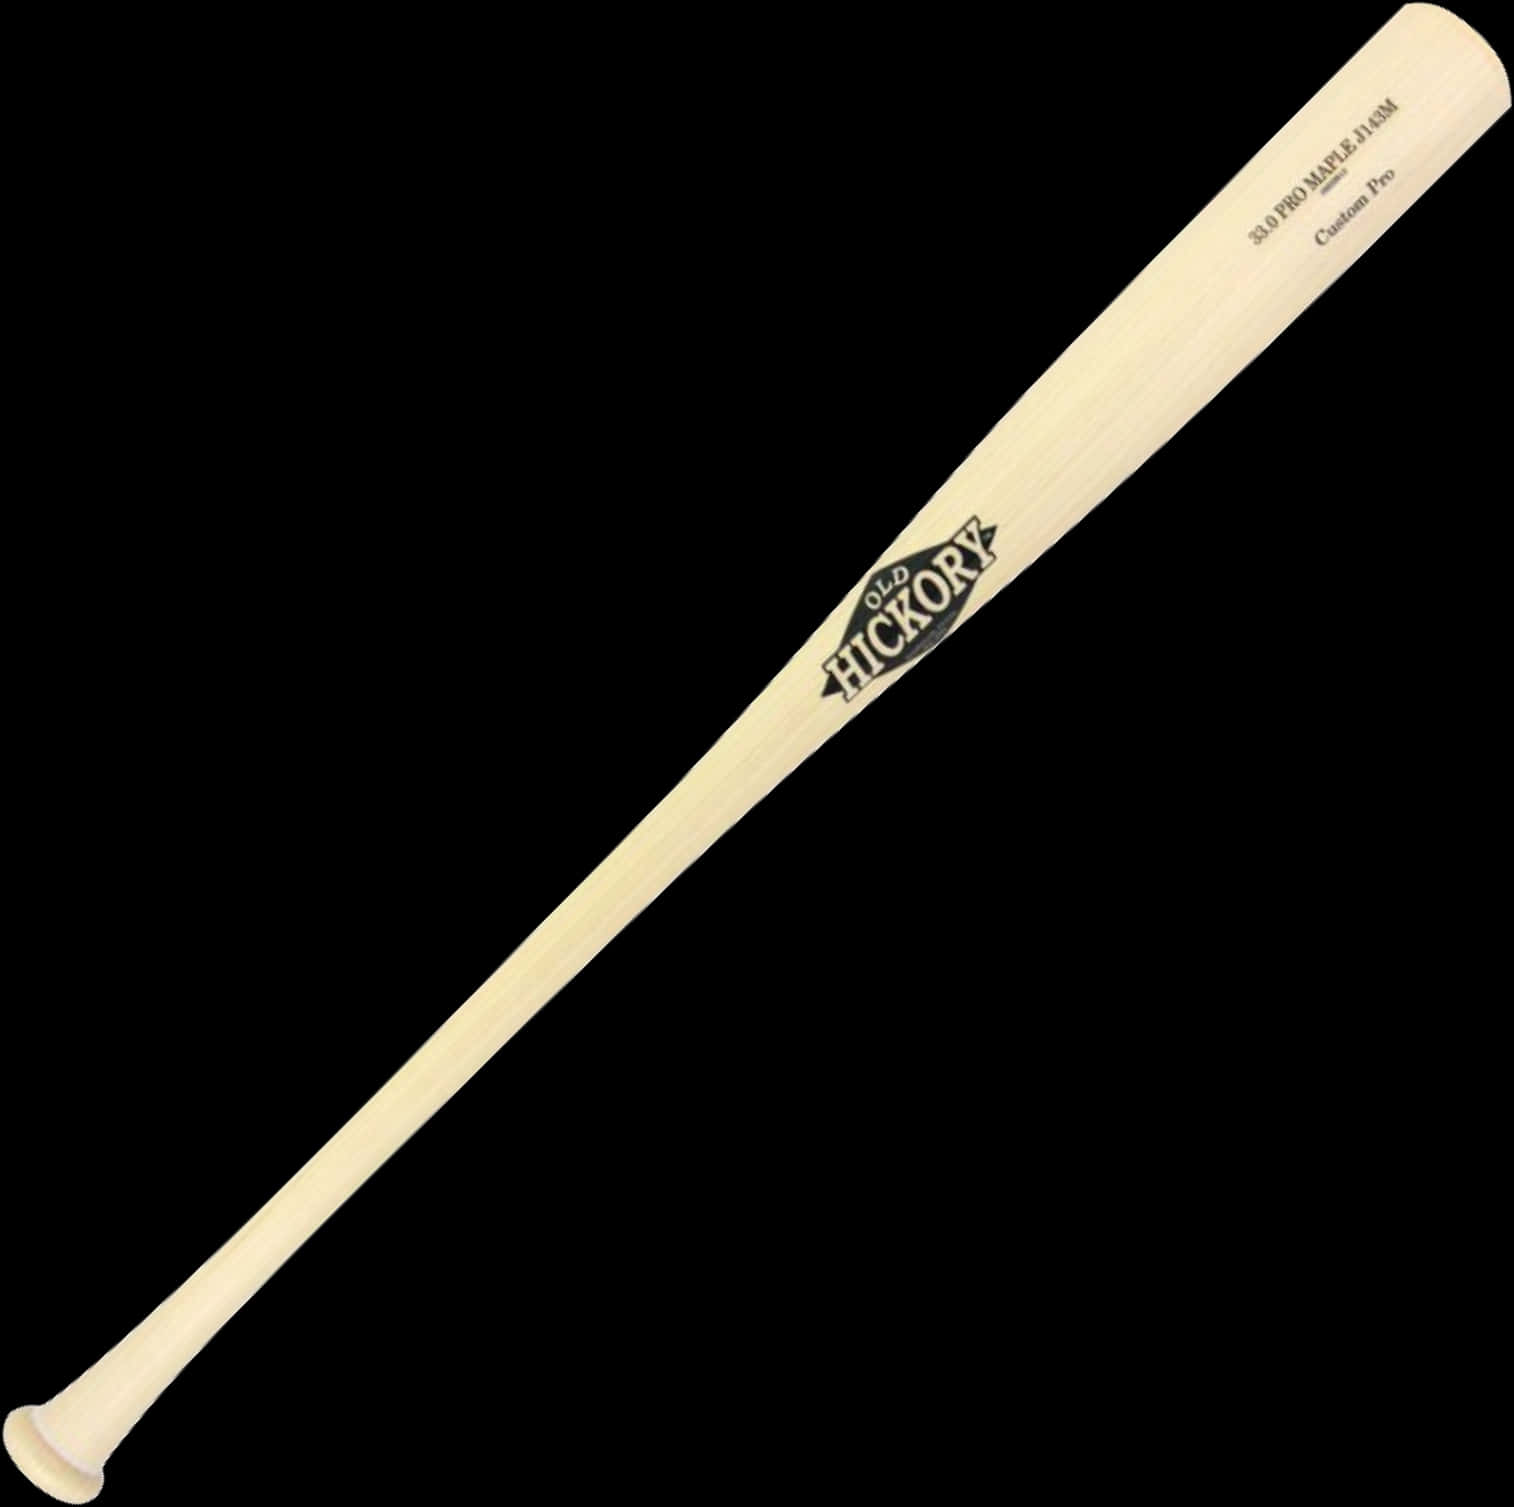 Hickory Wood Baseball Bat PNG image